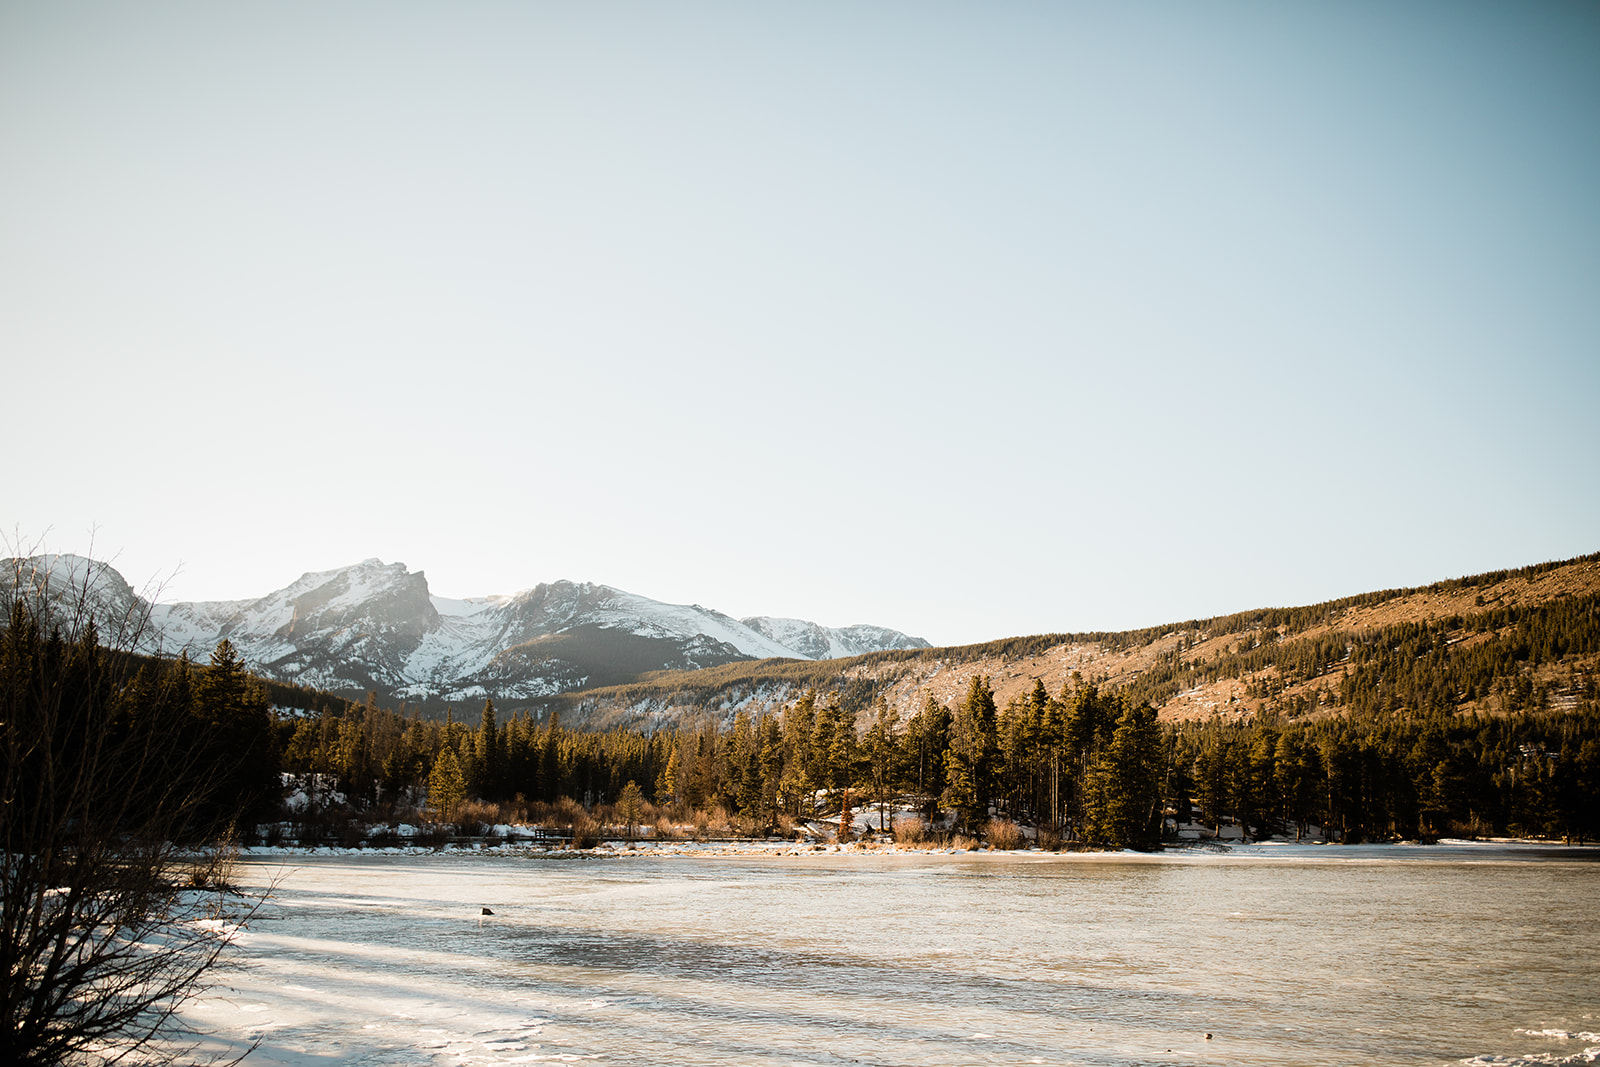 frozen Sprague Lake, Colorado mountains